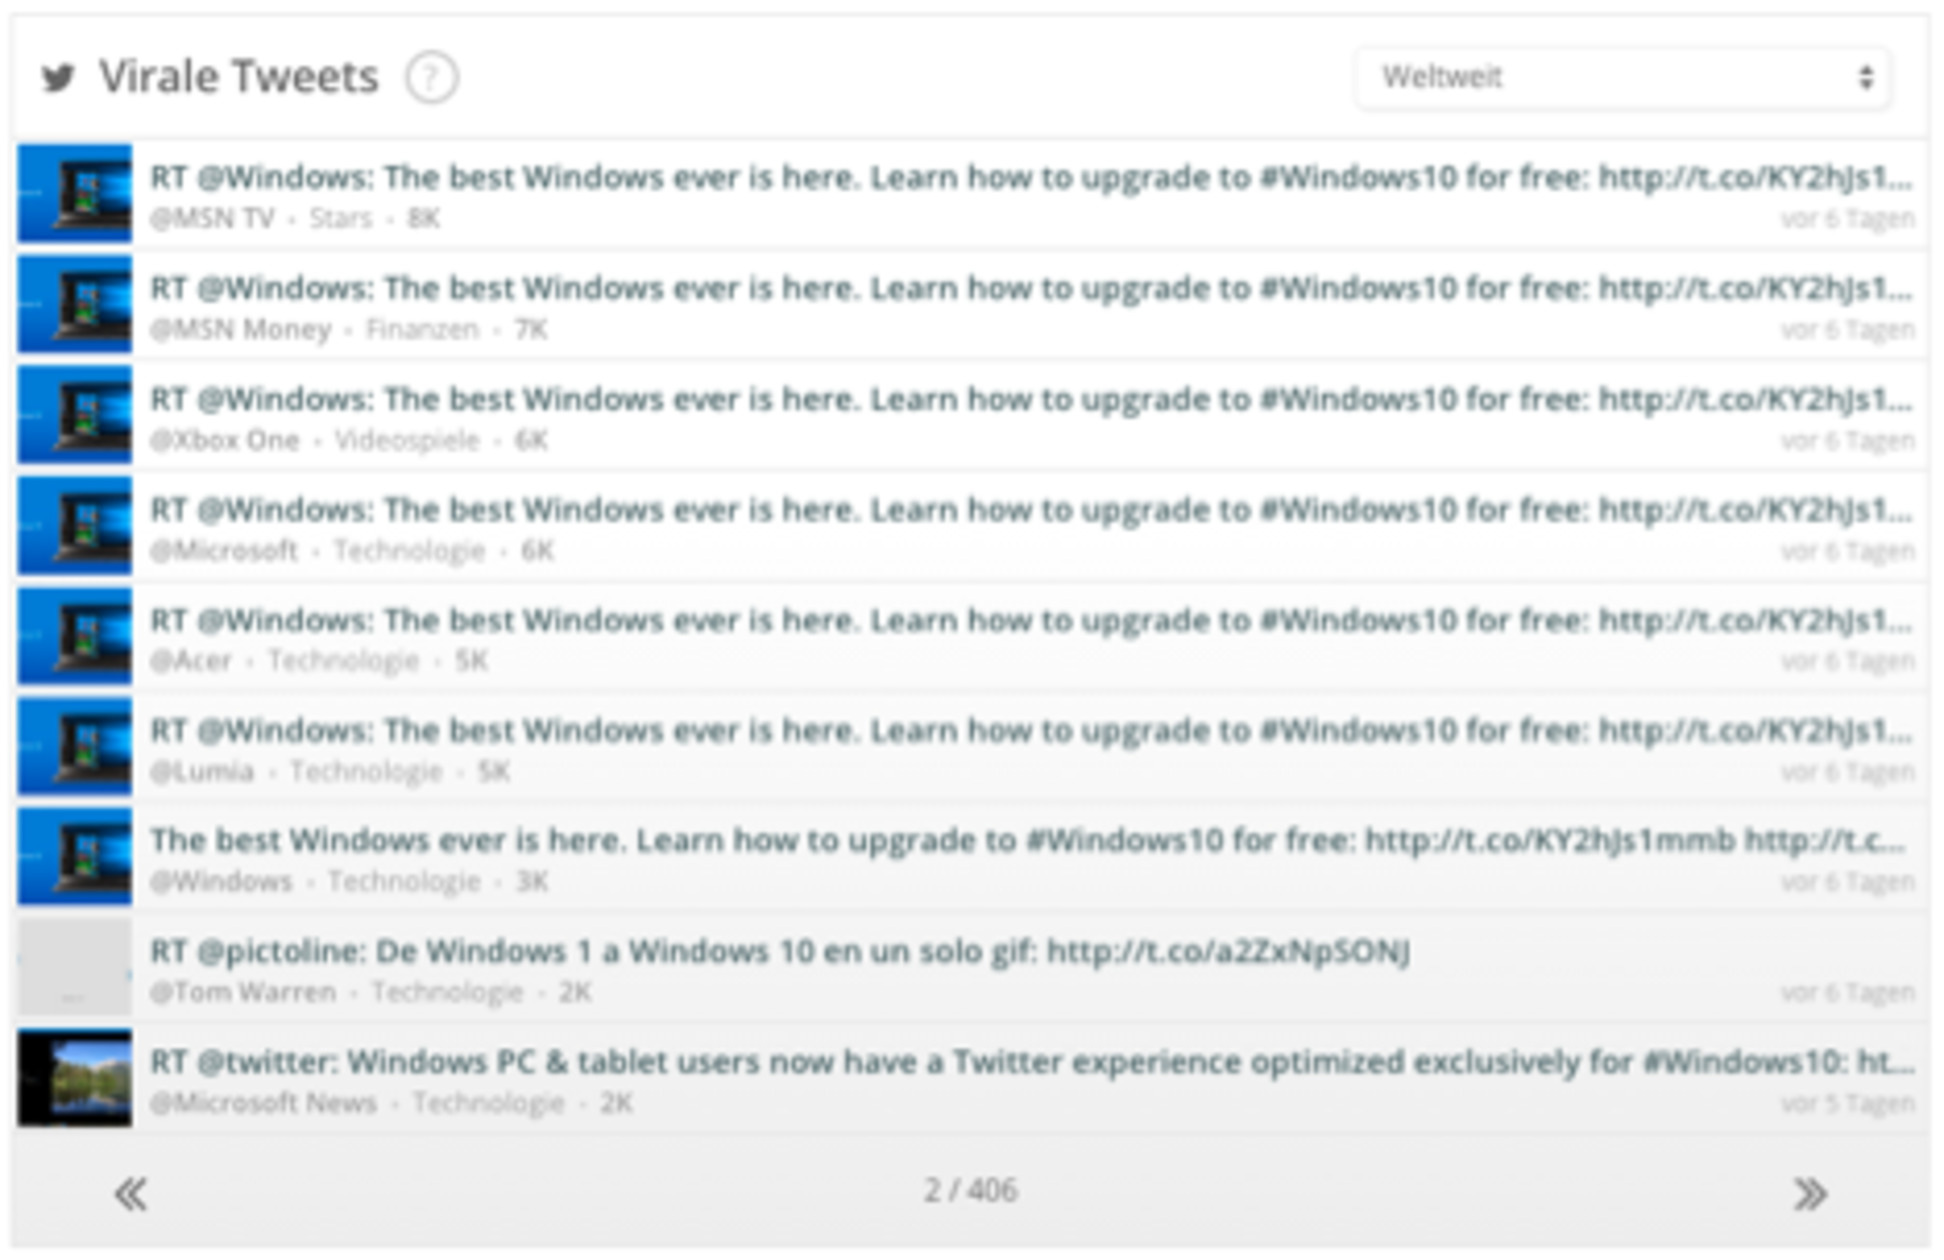 Windows_virale tweets_2